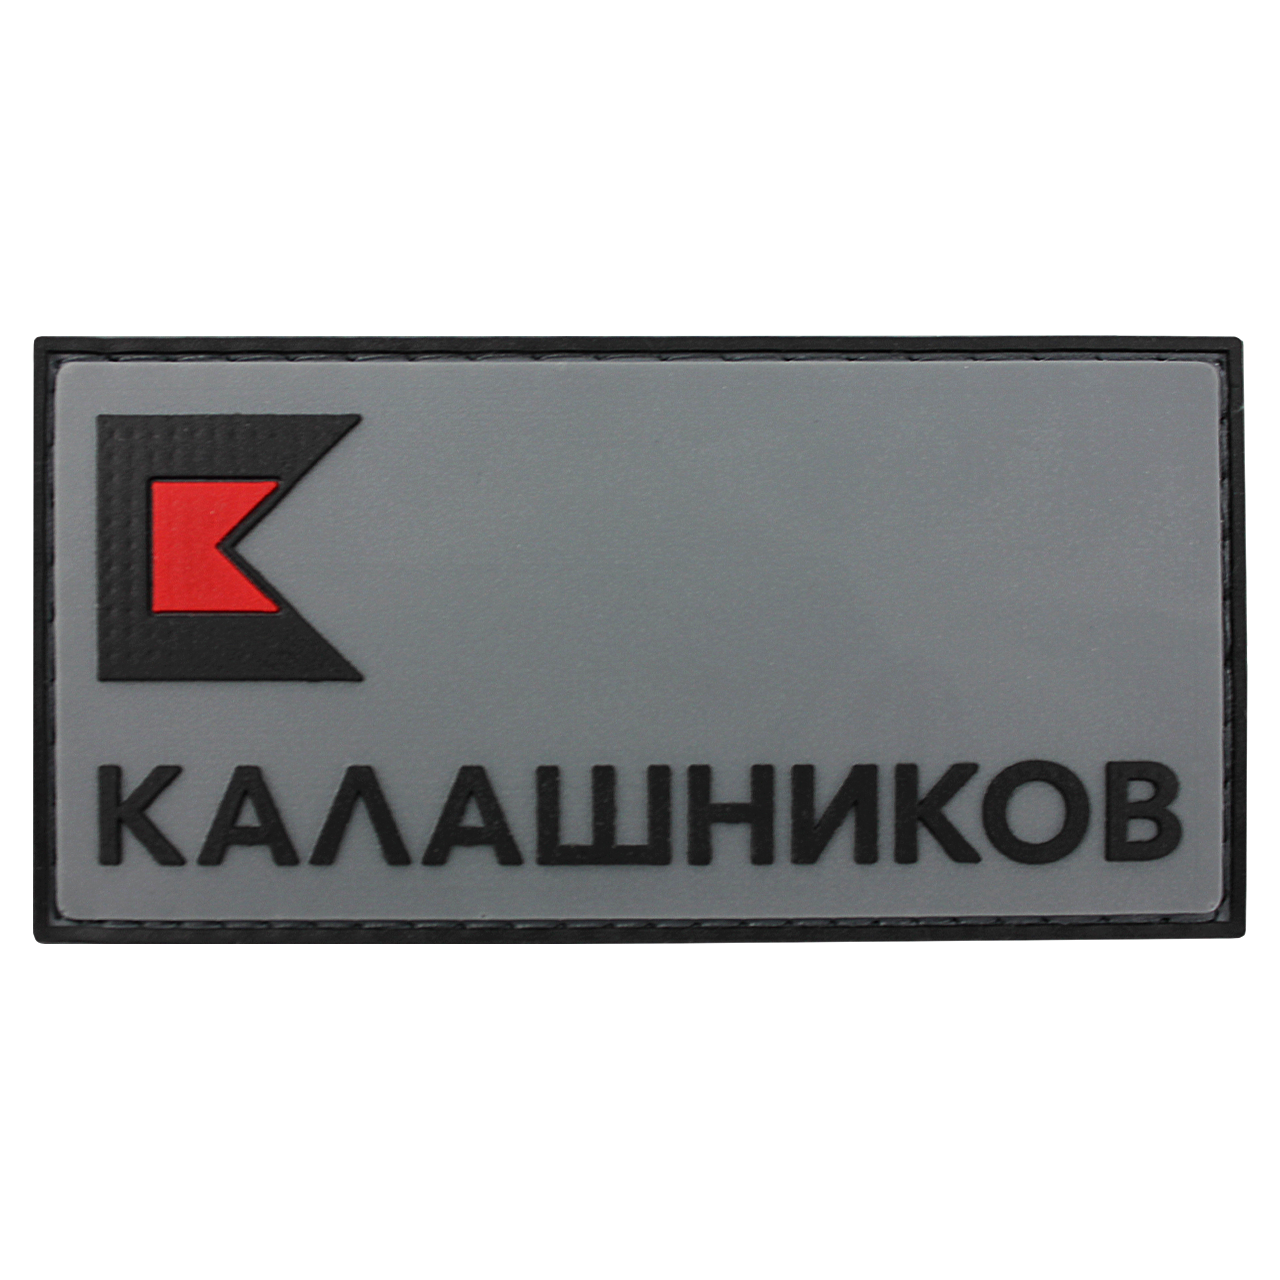 Патч (шеврон) на одежду КК лого; Серый черный; РУС 90х46мм 